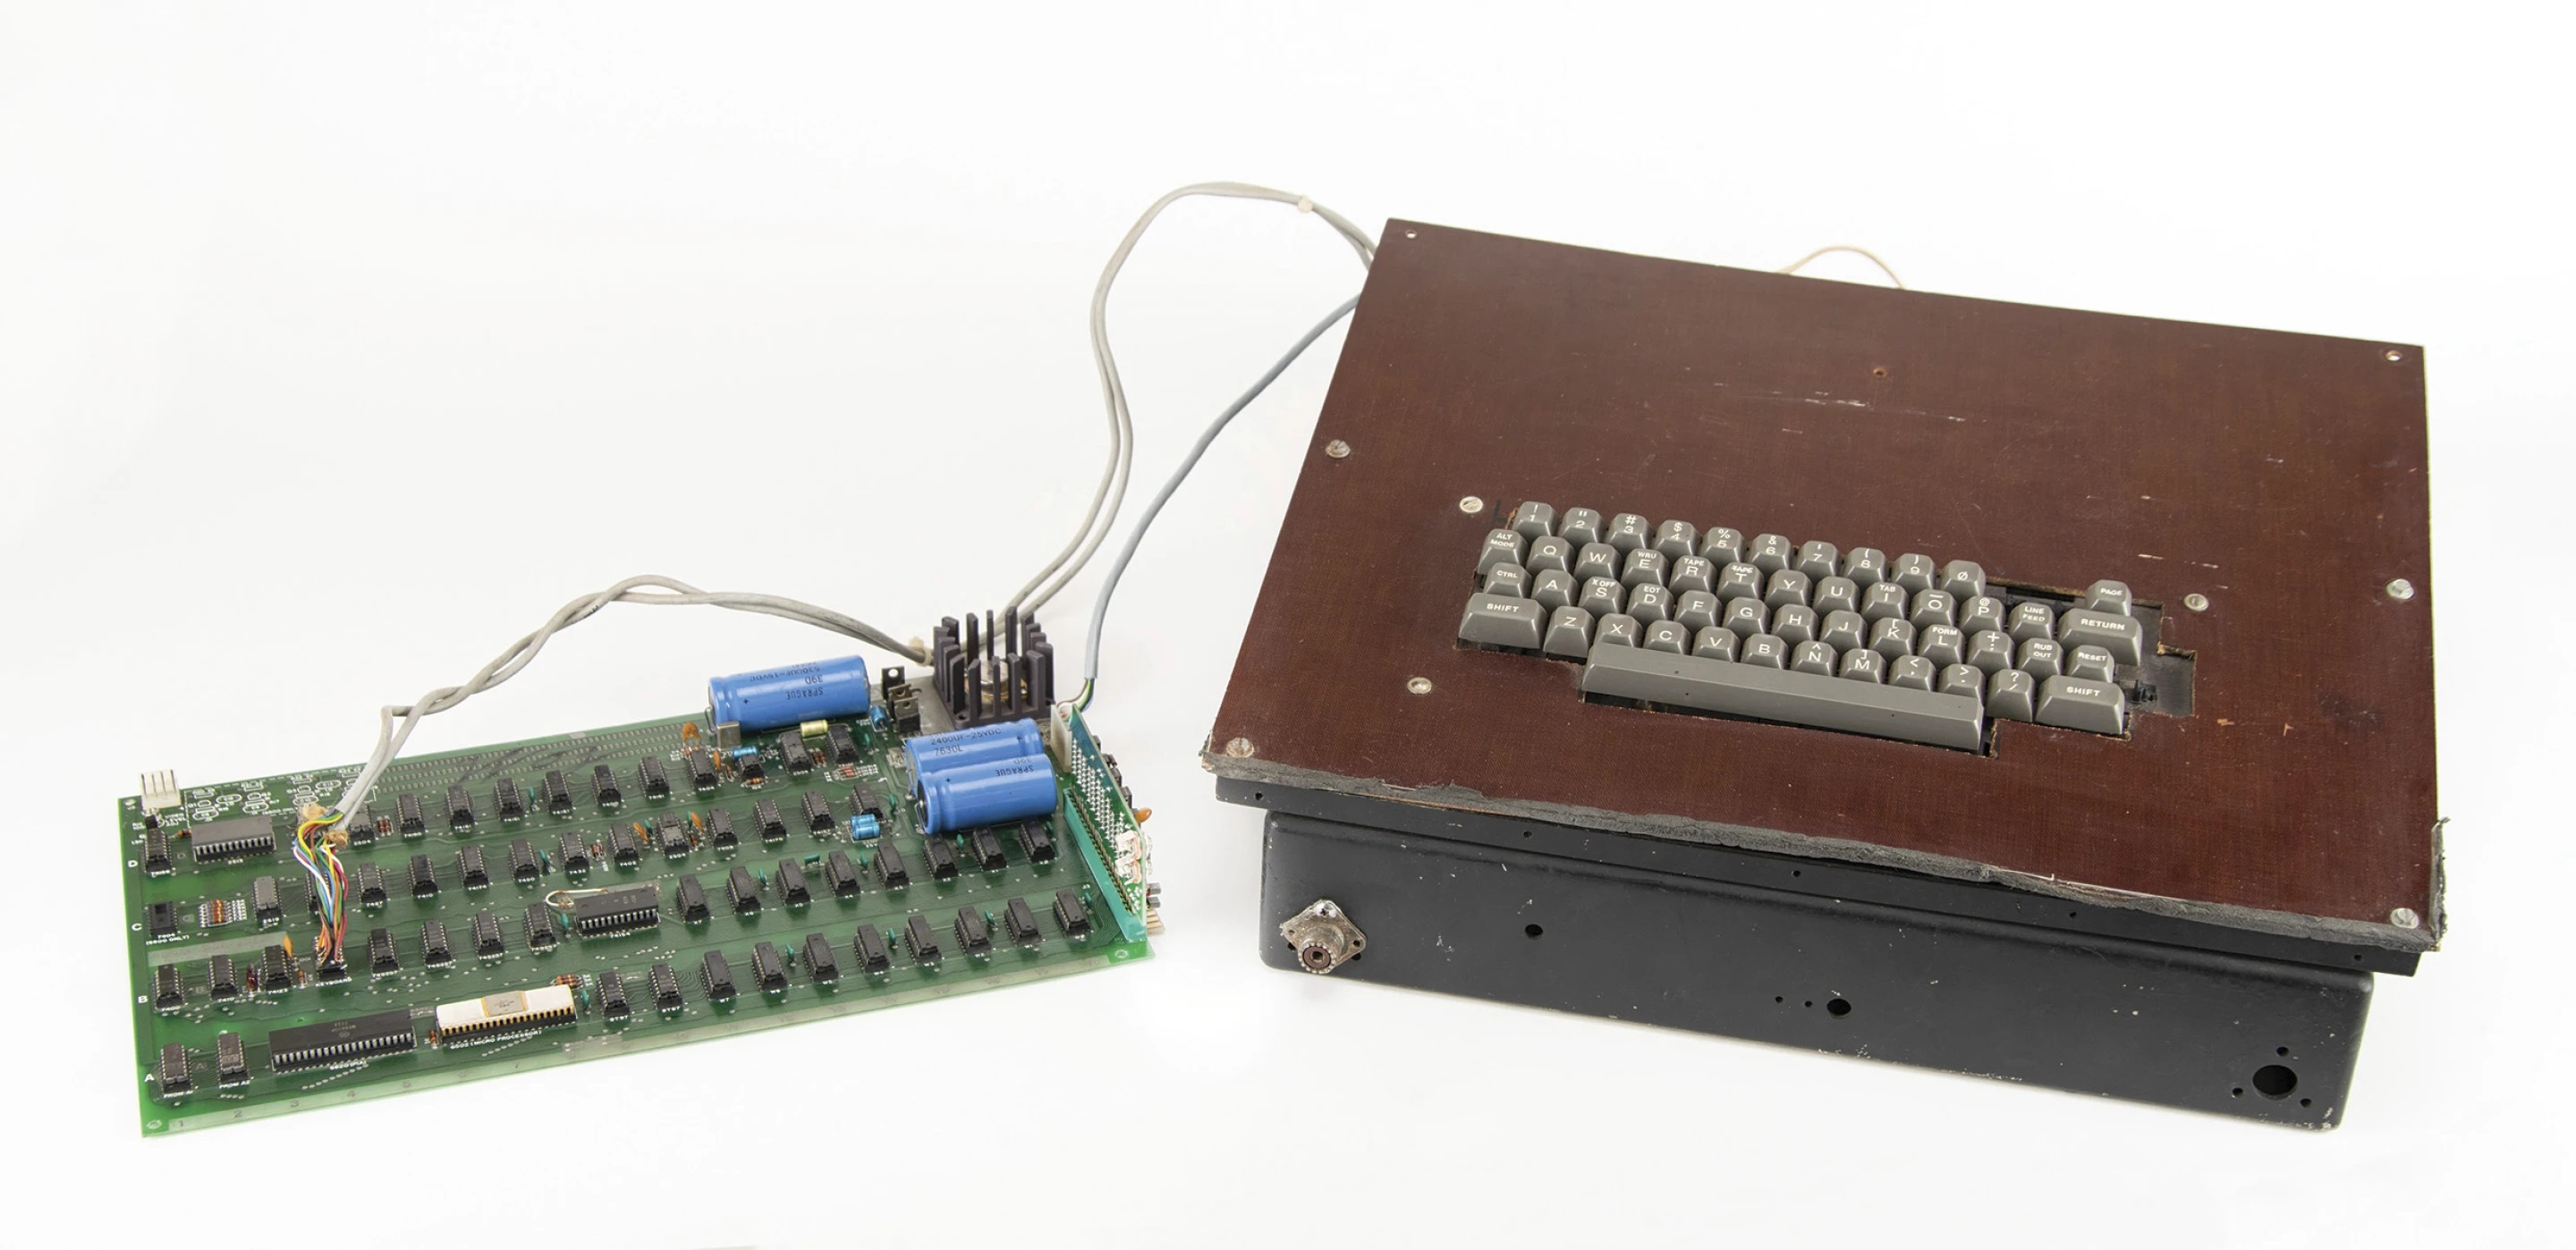 El primer ordenador de Apple, lanzado en los años 70, sale a subasta: se prevé venderlo por 200.000 dólares